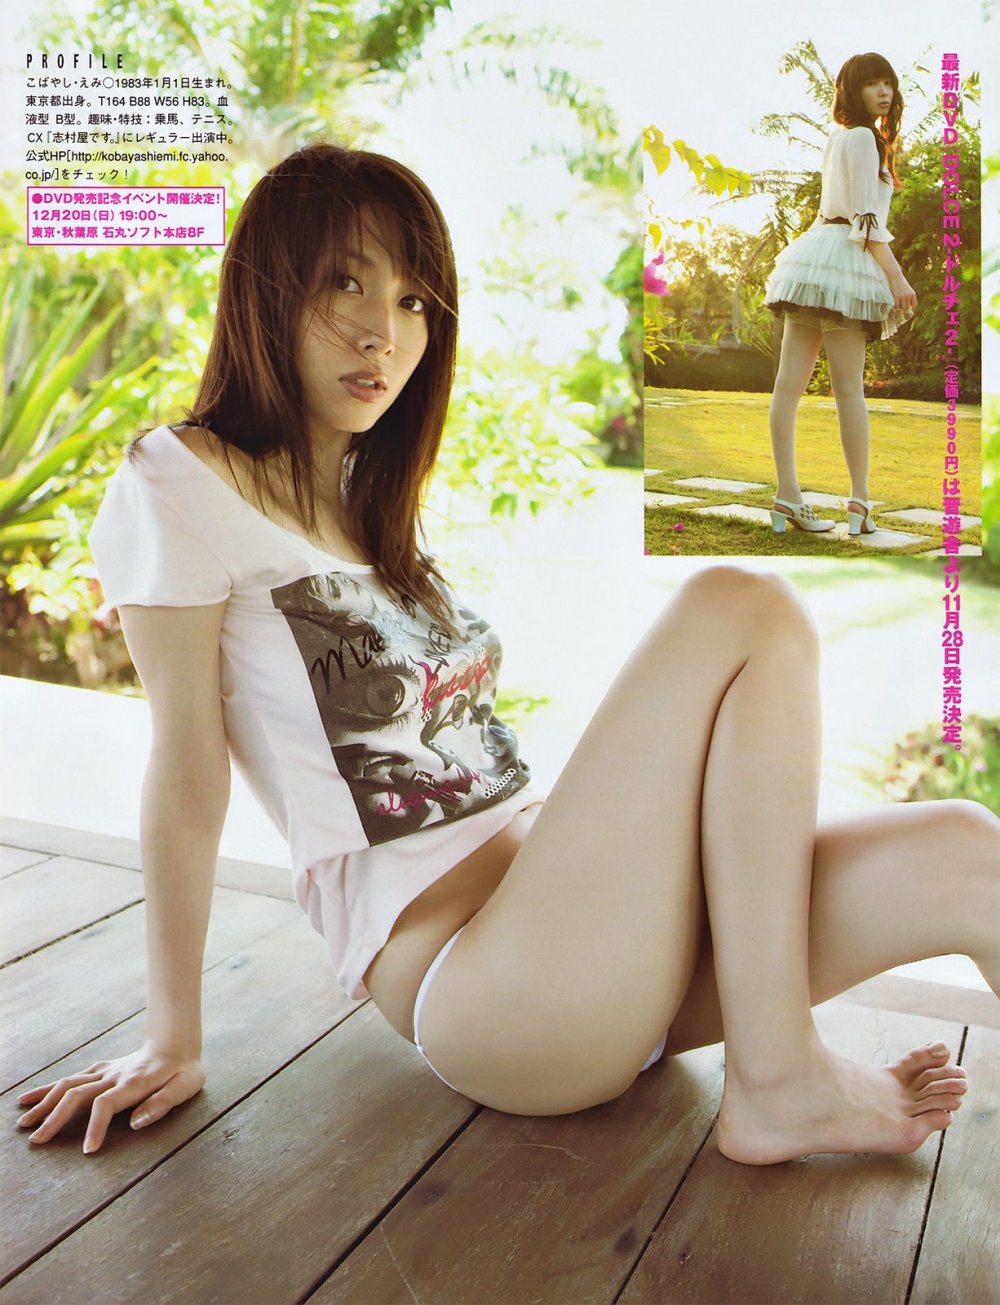 Emi Kobayashi Sexy and Hottest Photos , Latest Pics